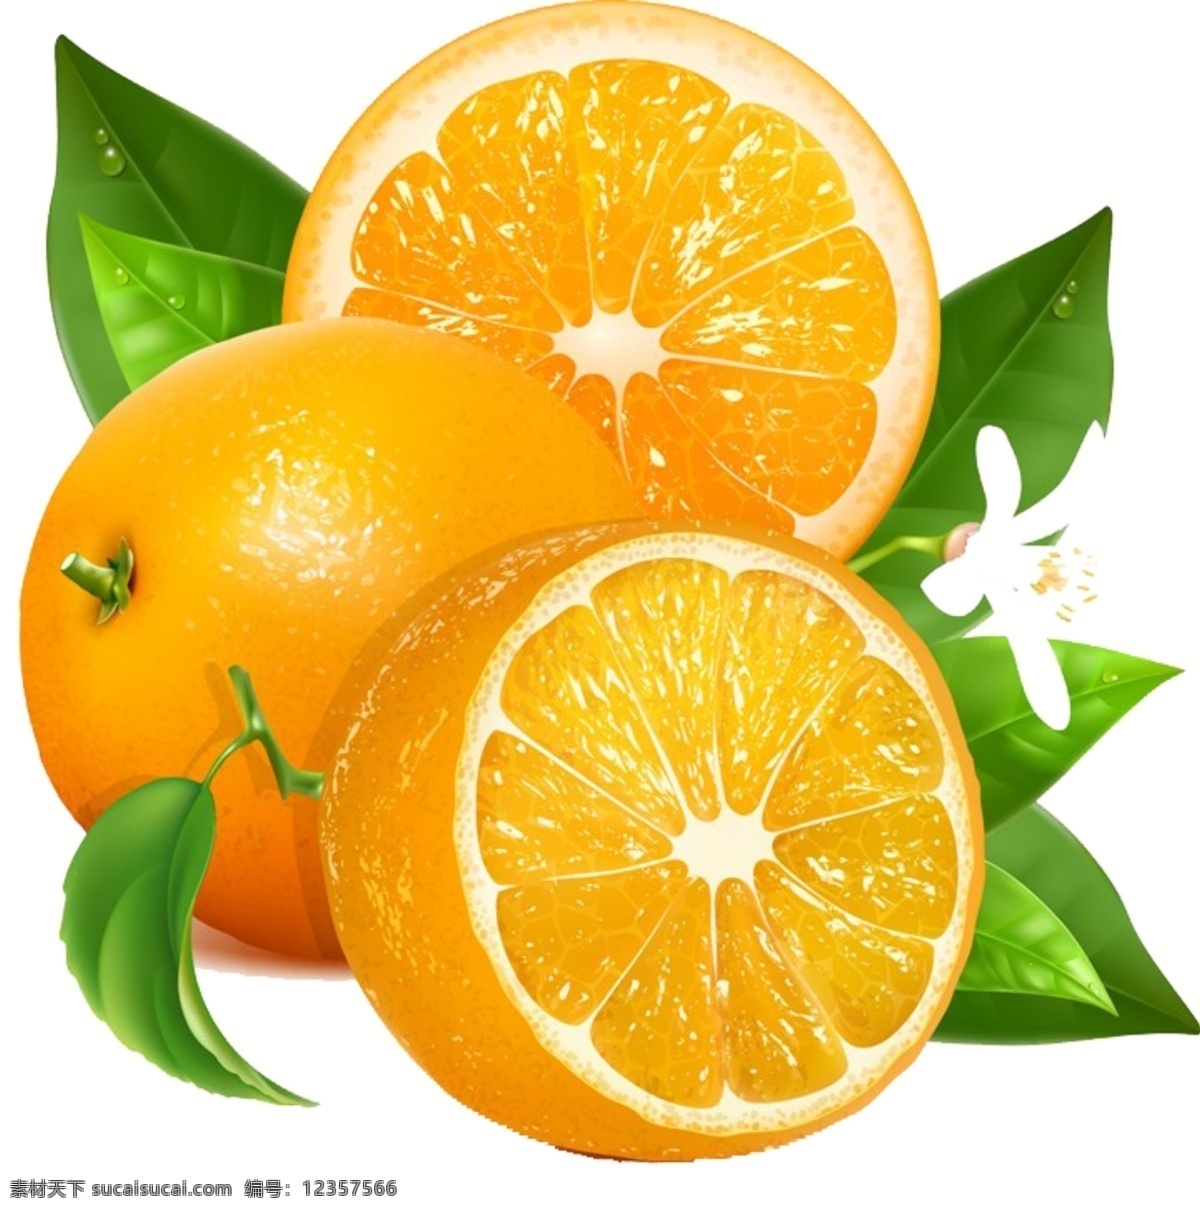 橙子图片 橙子 元素 果肉 新鲜 水果